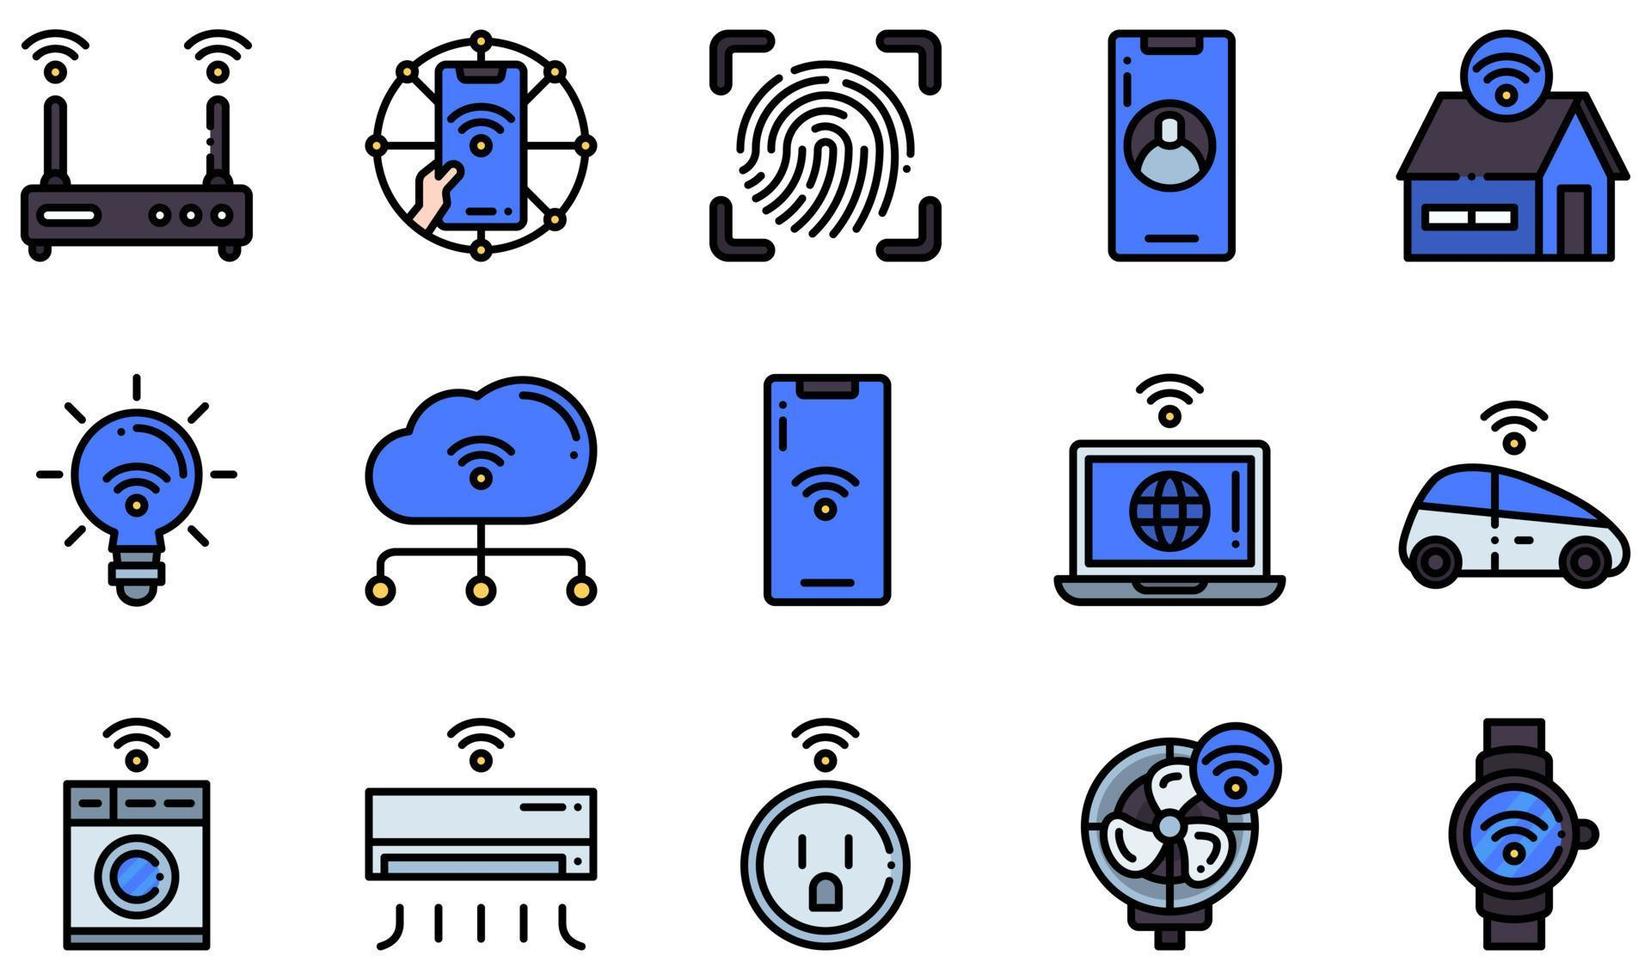 conjunto de ícones vetoriais relacionados à internet das coisas. contém ícones como internet das coisas, casa inteligente, luz inteligente, smartphone, carro inteligente, smartwatch e muito mais. vetor